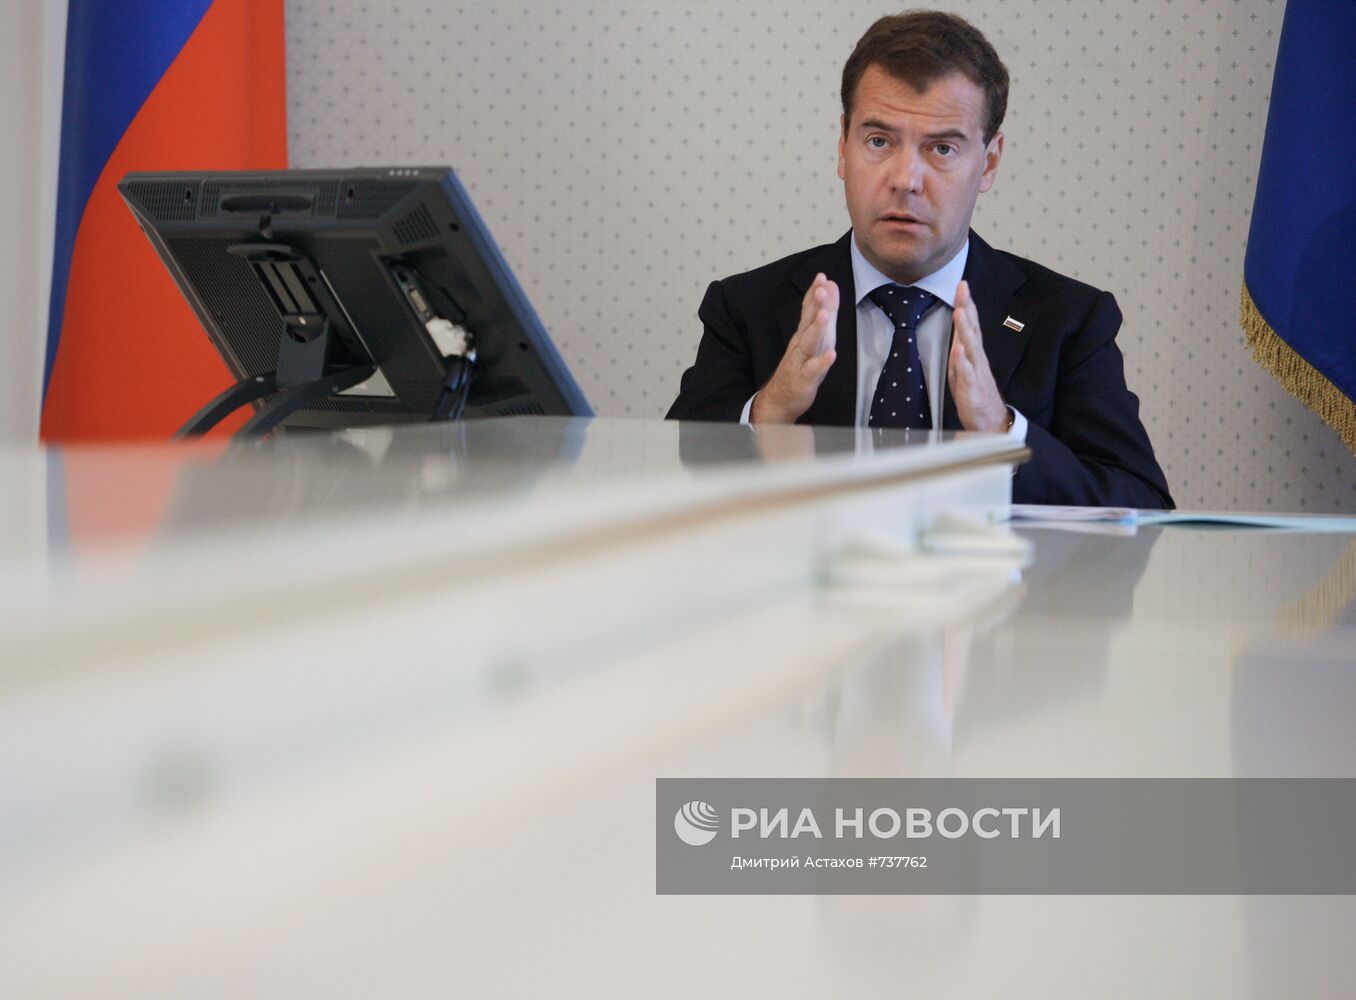 Дмитрий Медведев провел видеоконференцию с Александром Карлиным